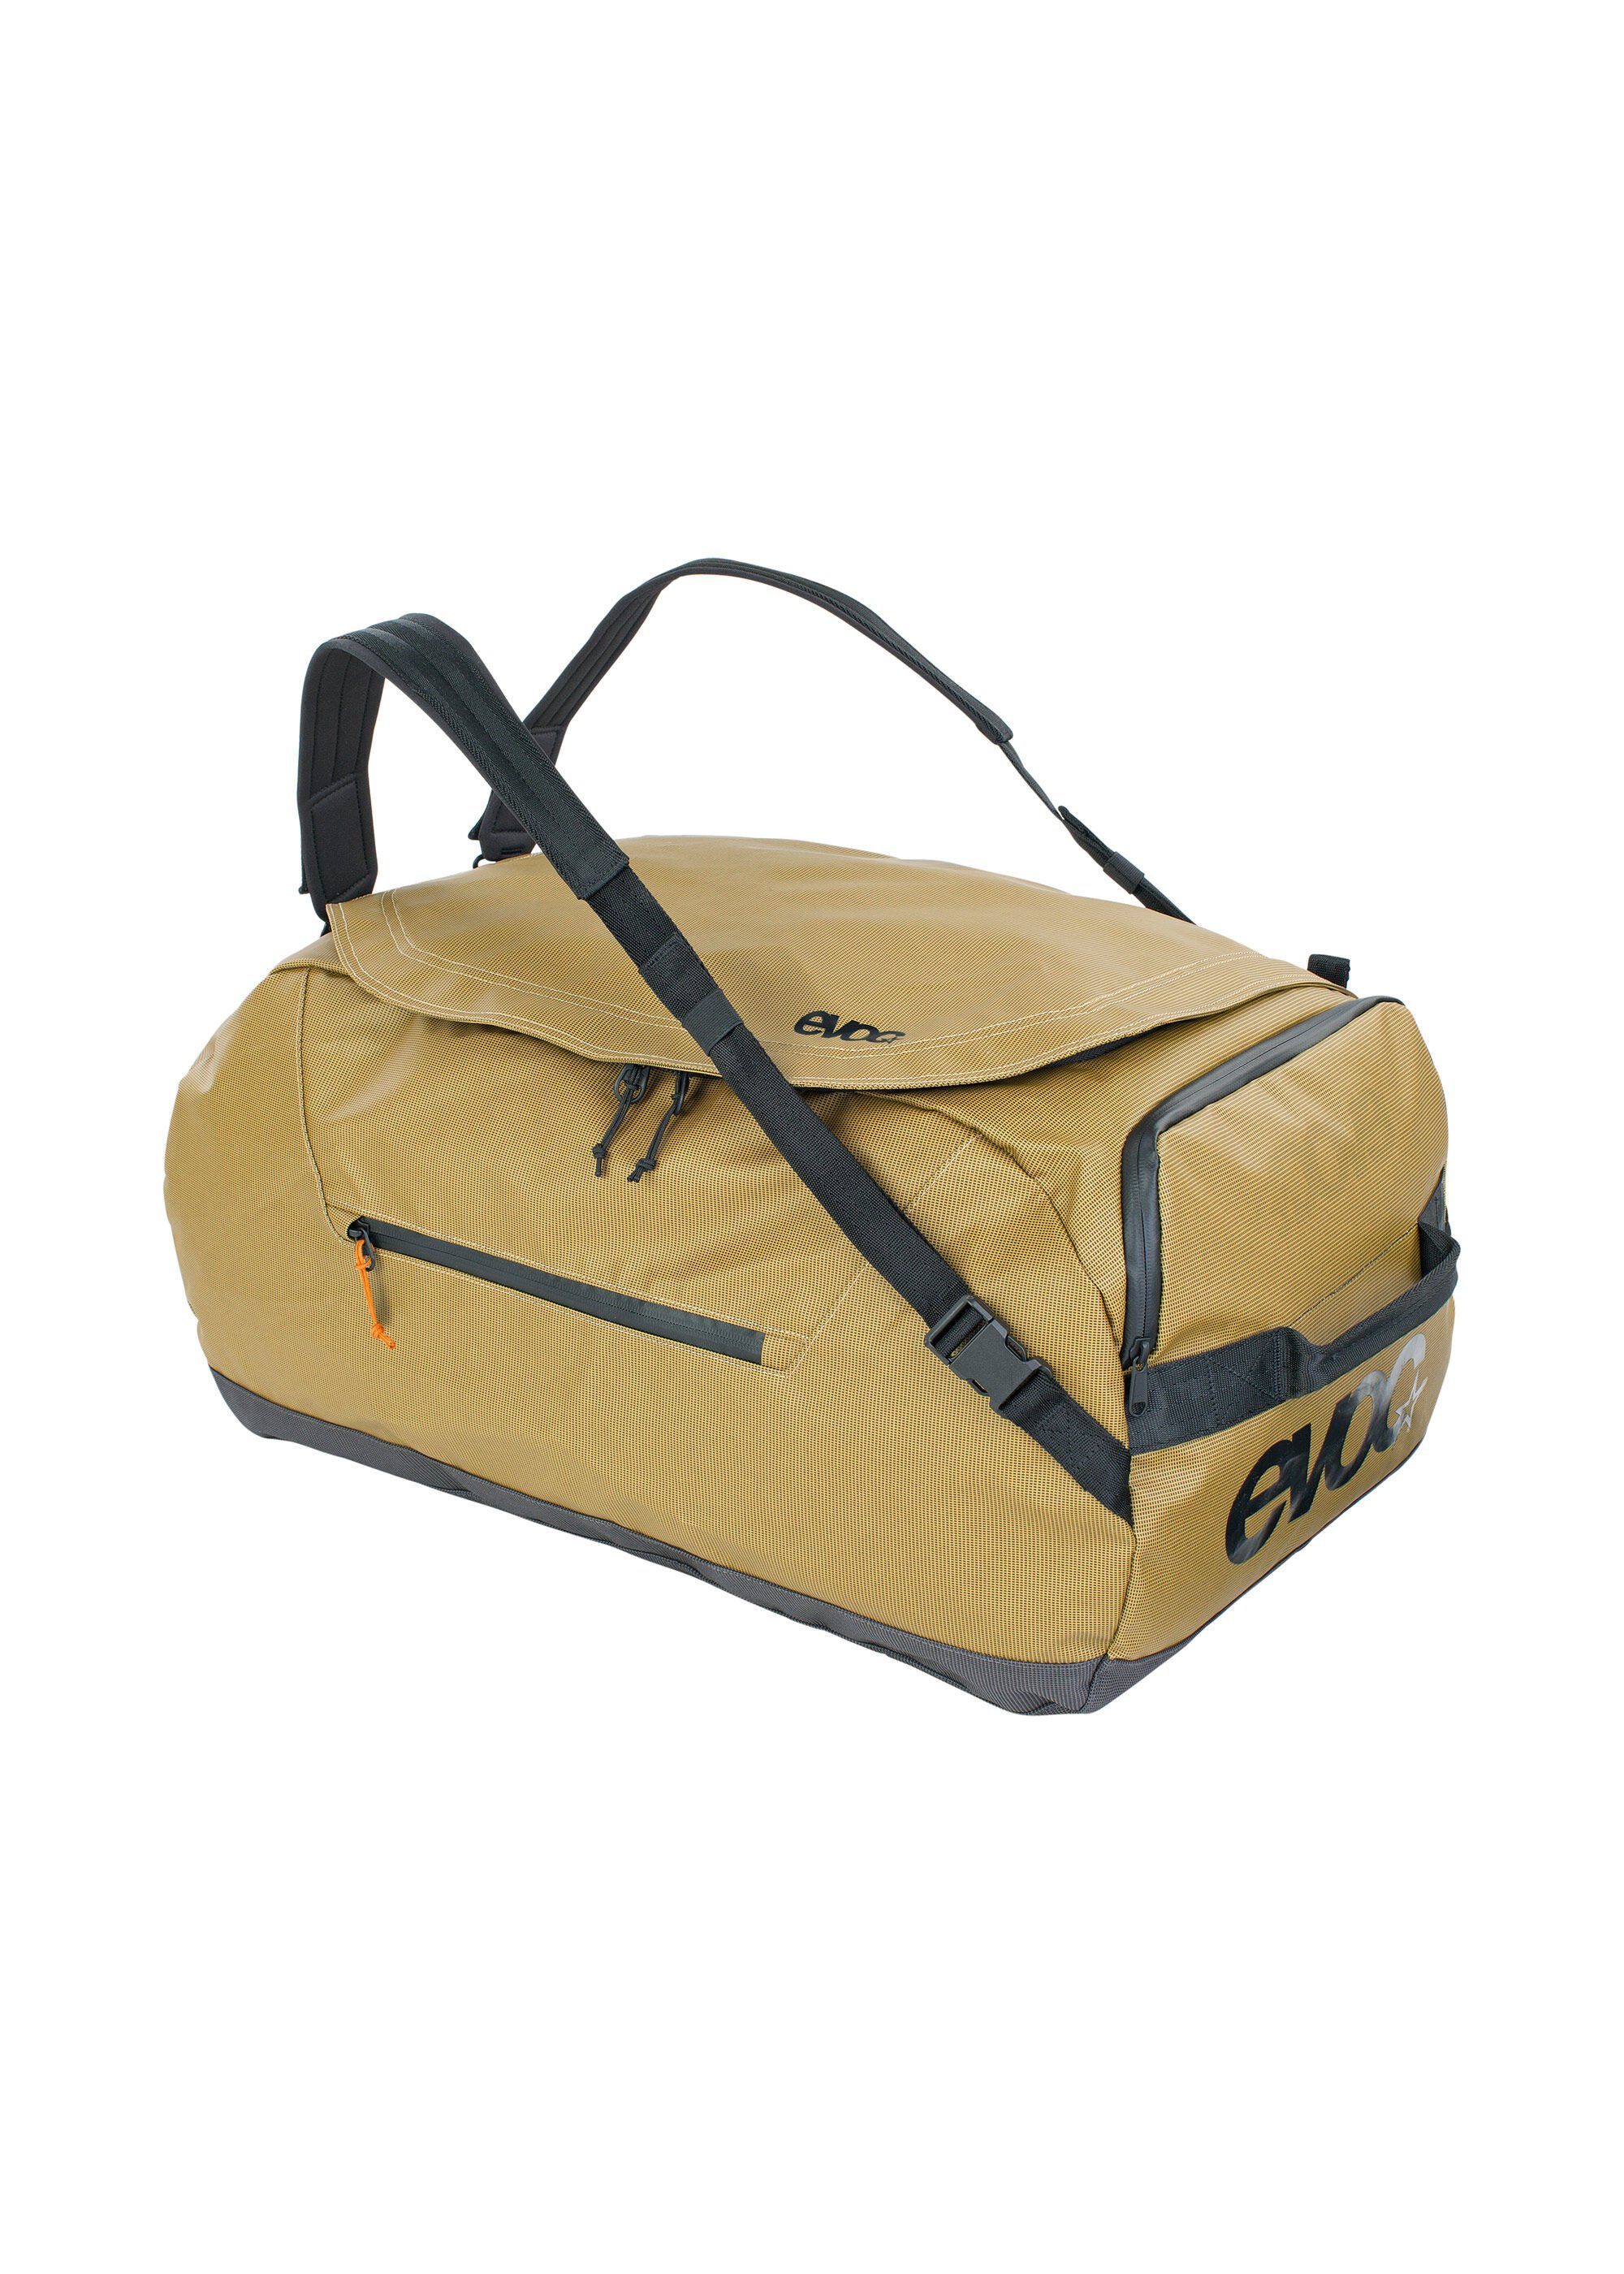 Reisetasche, aus gelb EVOC Material wasserresistentem